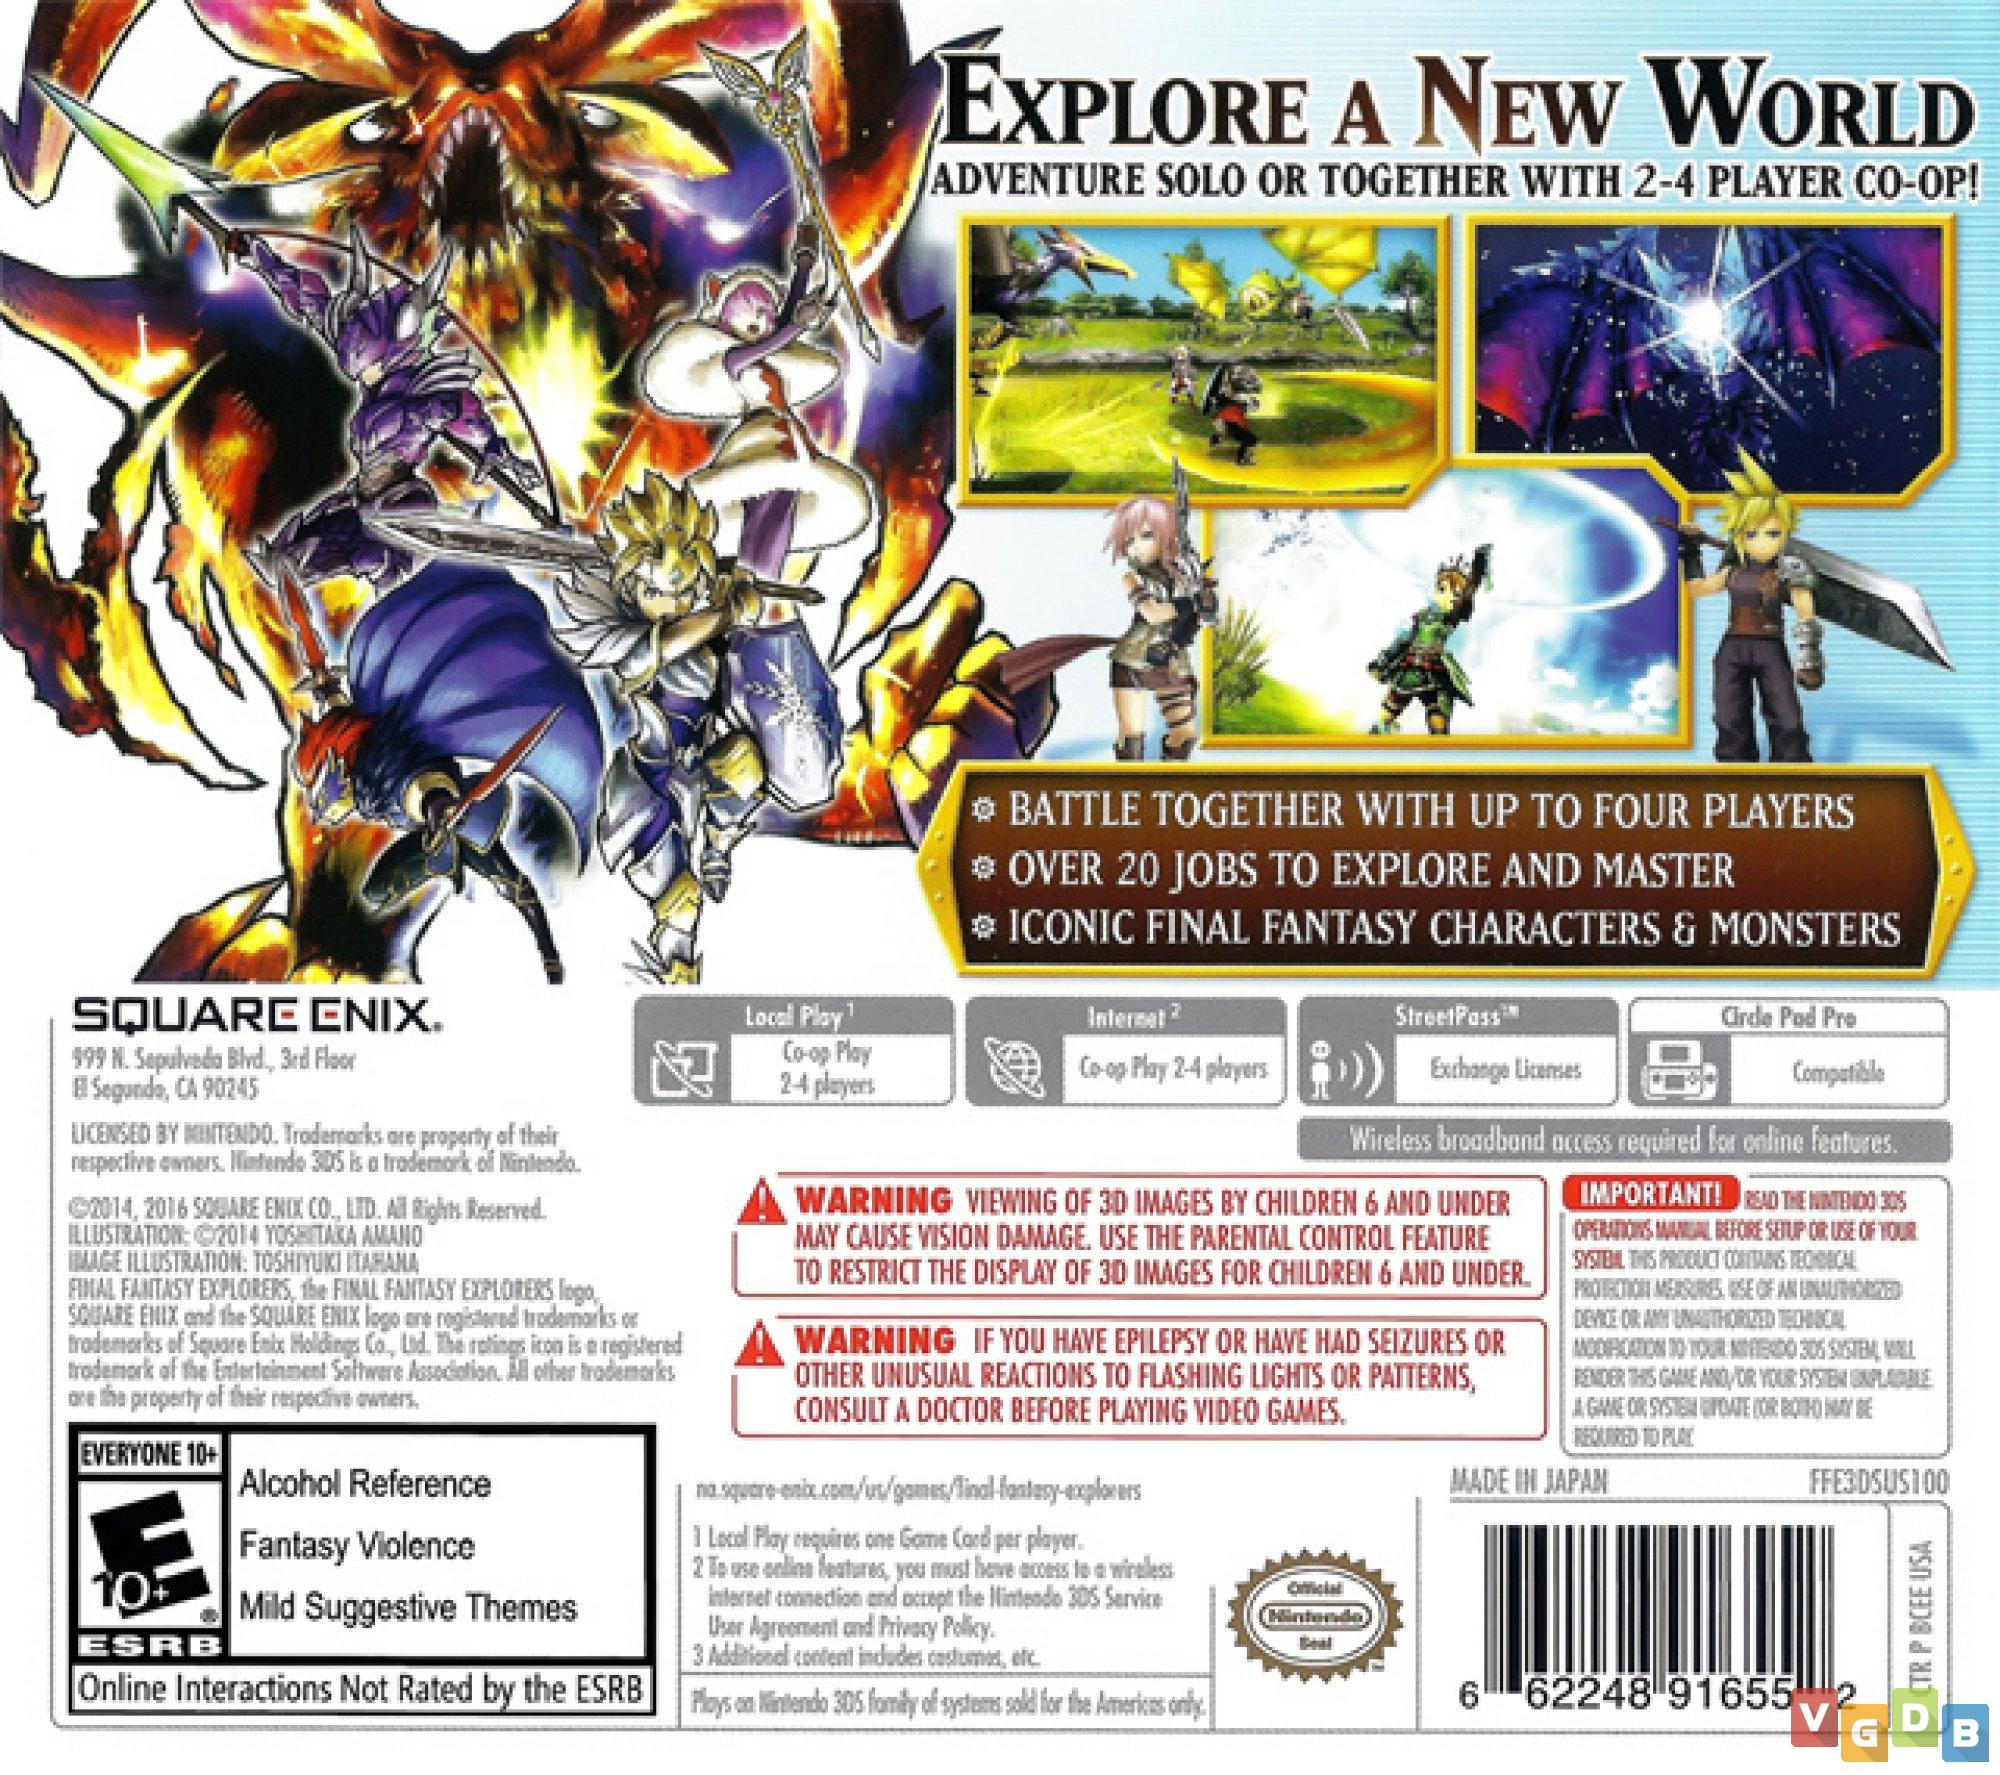 Final Fantasy XII Original Nintendo ds/2ds & 3ds - Videogames - Parque  Lafaiete, Duque de Caxias 1252398748